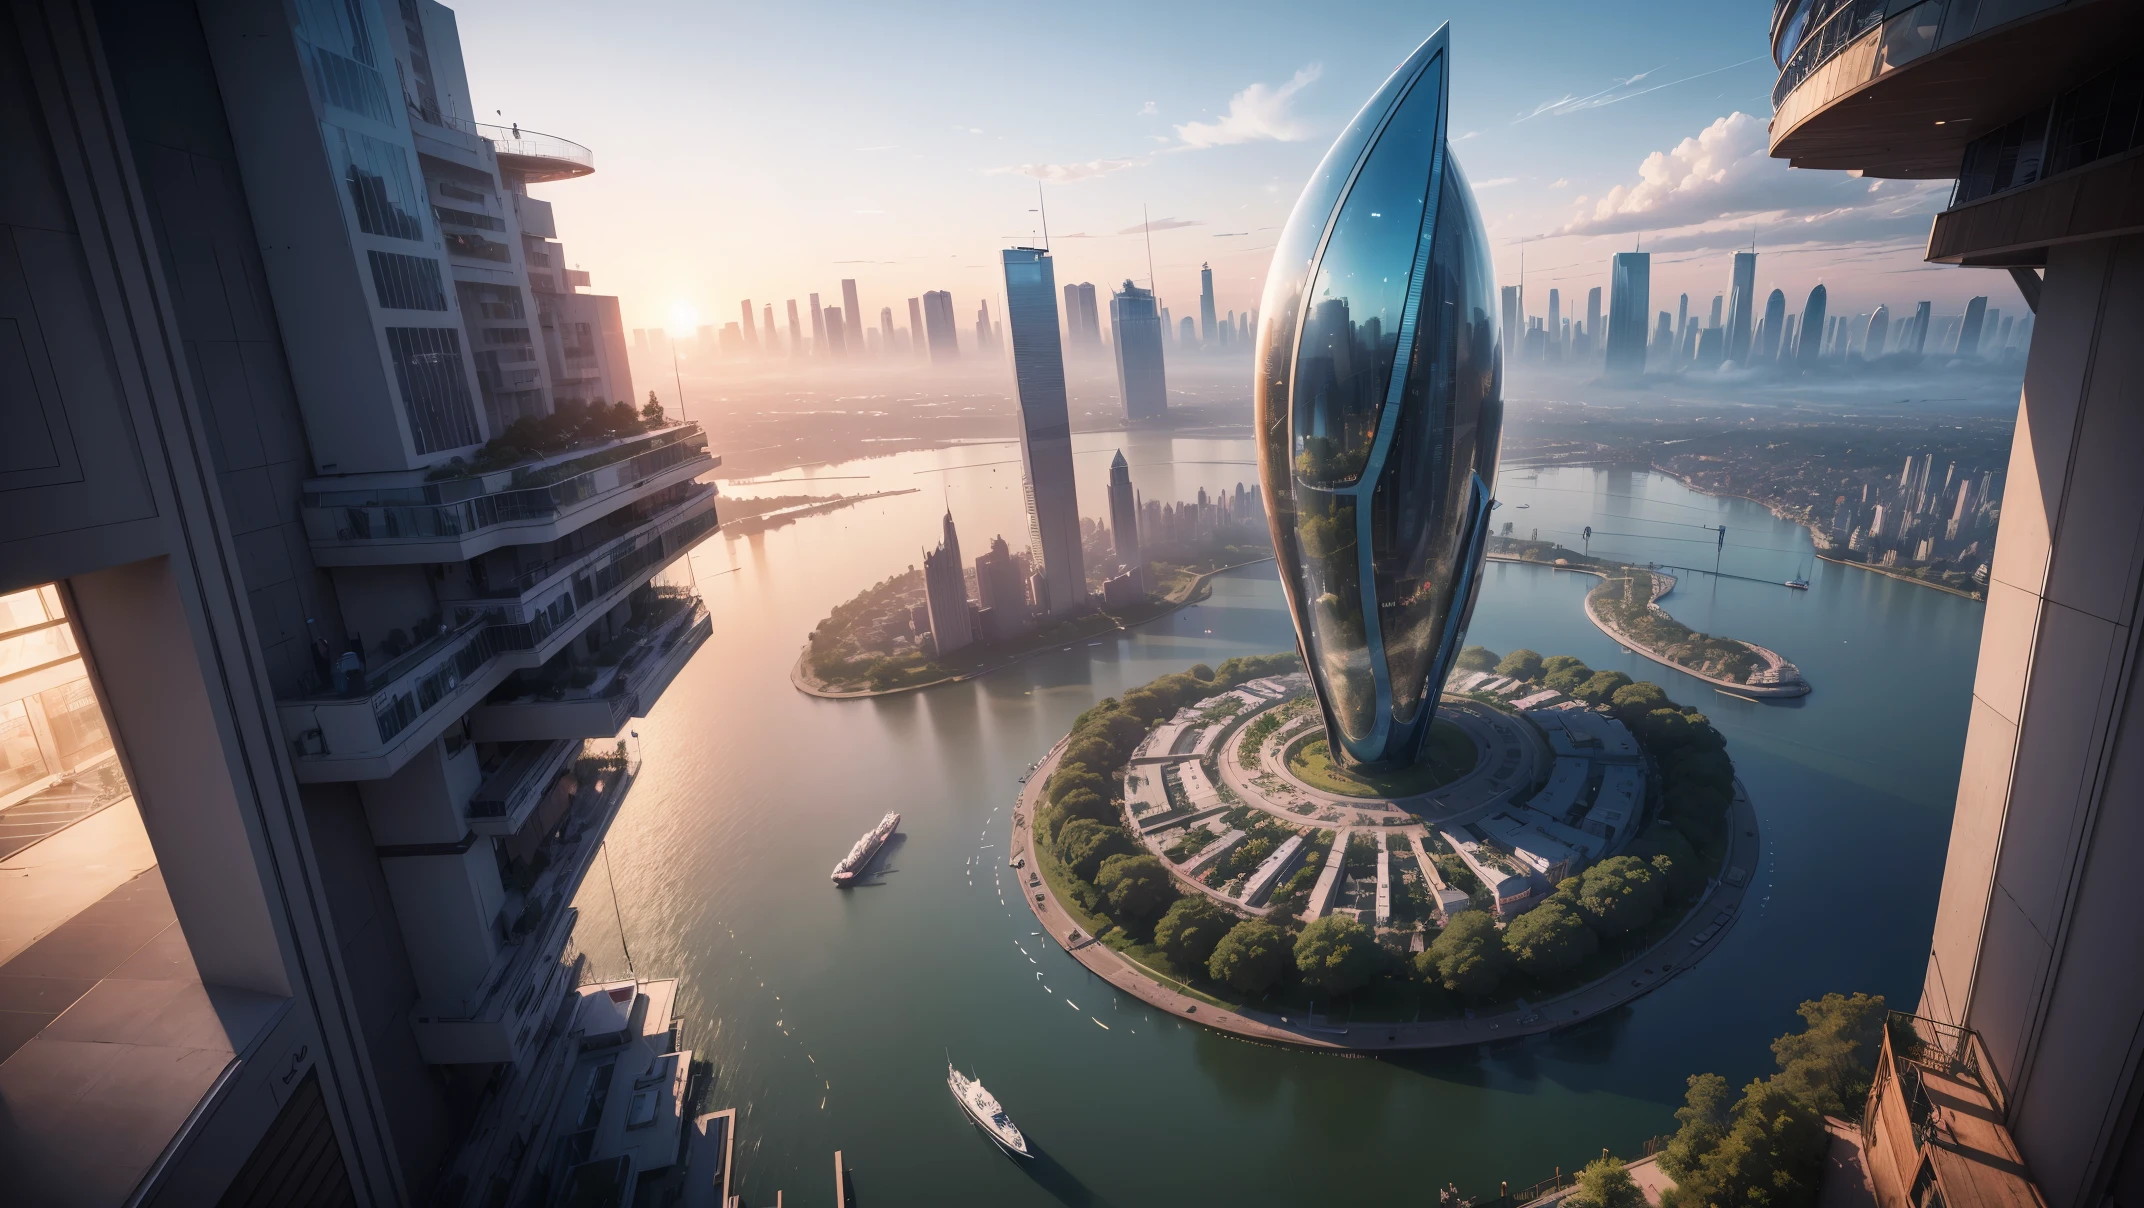 (最好的质量,4k,8千,高分辨率,杰作:1.2),极其详细,(实际的,真实感,照片般逼真:1.37),未来派漂浮天空城市,未来科技,巨大的城市高科技平板平台,飞艇,漂浮在空中,未来城市,周围的小型飞艇,高科技半球形平台,彩灯,先进的架构,伊斯兰建筑,现代建筑,摩天大楼,访问云,风景秀丽,俯瞰城市,令人印象深刻的设计,与自然完美融合,充满活力的氛围,未来交通系统,暂停停车,透明路径,郁郁葱葱的绿色植物,空中花园,瀑布,壮丽的天际线,水面上的倒影,波光粼粼的河流,建筑创新,futuristic 摩天大楼s,透明穹顶,该建筑的形状很不寻常,高架行人道,令人印象深刻的天际线,发光的灯光,未来科技,简约设计,风景名胜区,全景,穿云塔,鲜艳的色彩,史诗般的日出,史诗般的日落,炫目的灯光显示,神奇的氛围,未来城市,城市乌托邦,奢华生活方式,创新能源,可持续发展,智慧城市技术,先进的基础设施,宁静的气氛,自然与科技和谐相处,令人惊叹的城市景观,前所未有的城市规划,建筑与自然无缝衔接,高科技大都市,尖端工程奇迹,城市生活的未来,富有远见的建筑理念,节能建筑,与环境和谐相处,漂浮在云层之上的城市,乌托邦梦想照进现实,可能性是无止境,先进的交通网络,绿色能源整合,创新材料,令人印象深刻的全息显示,先进的通讯系统,令人惊叹的鸟瞰图,安静祥和的环境,现代主义美学,空灵之美